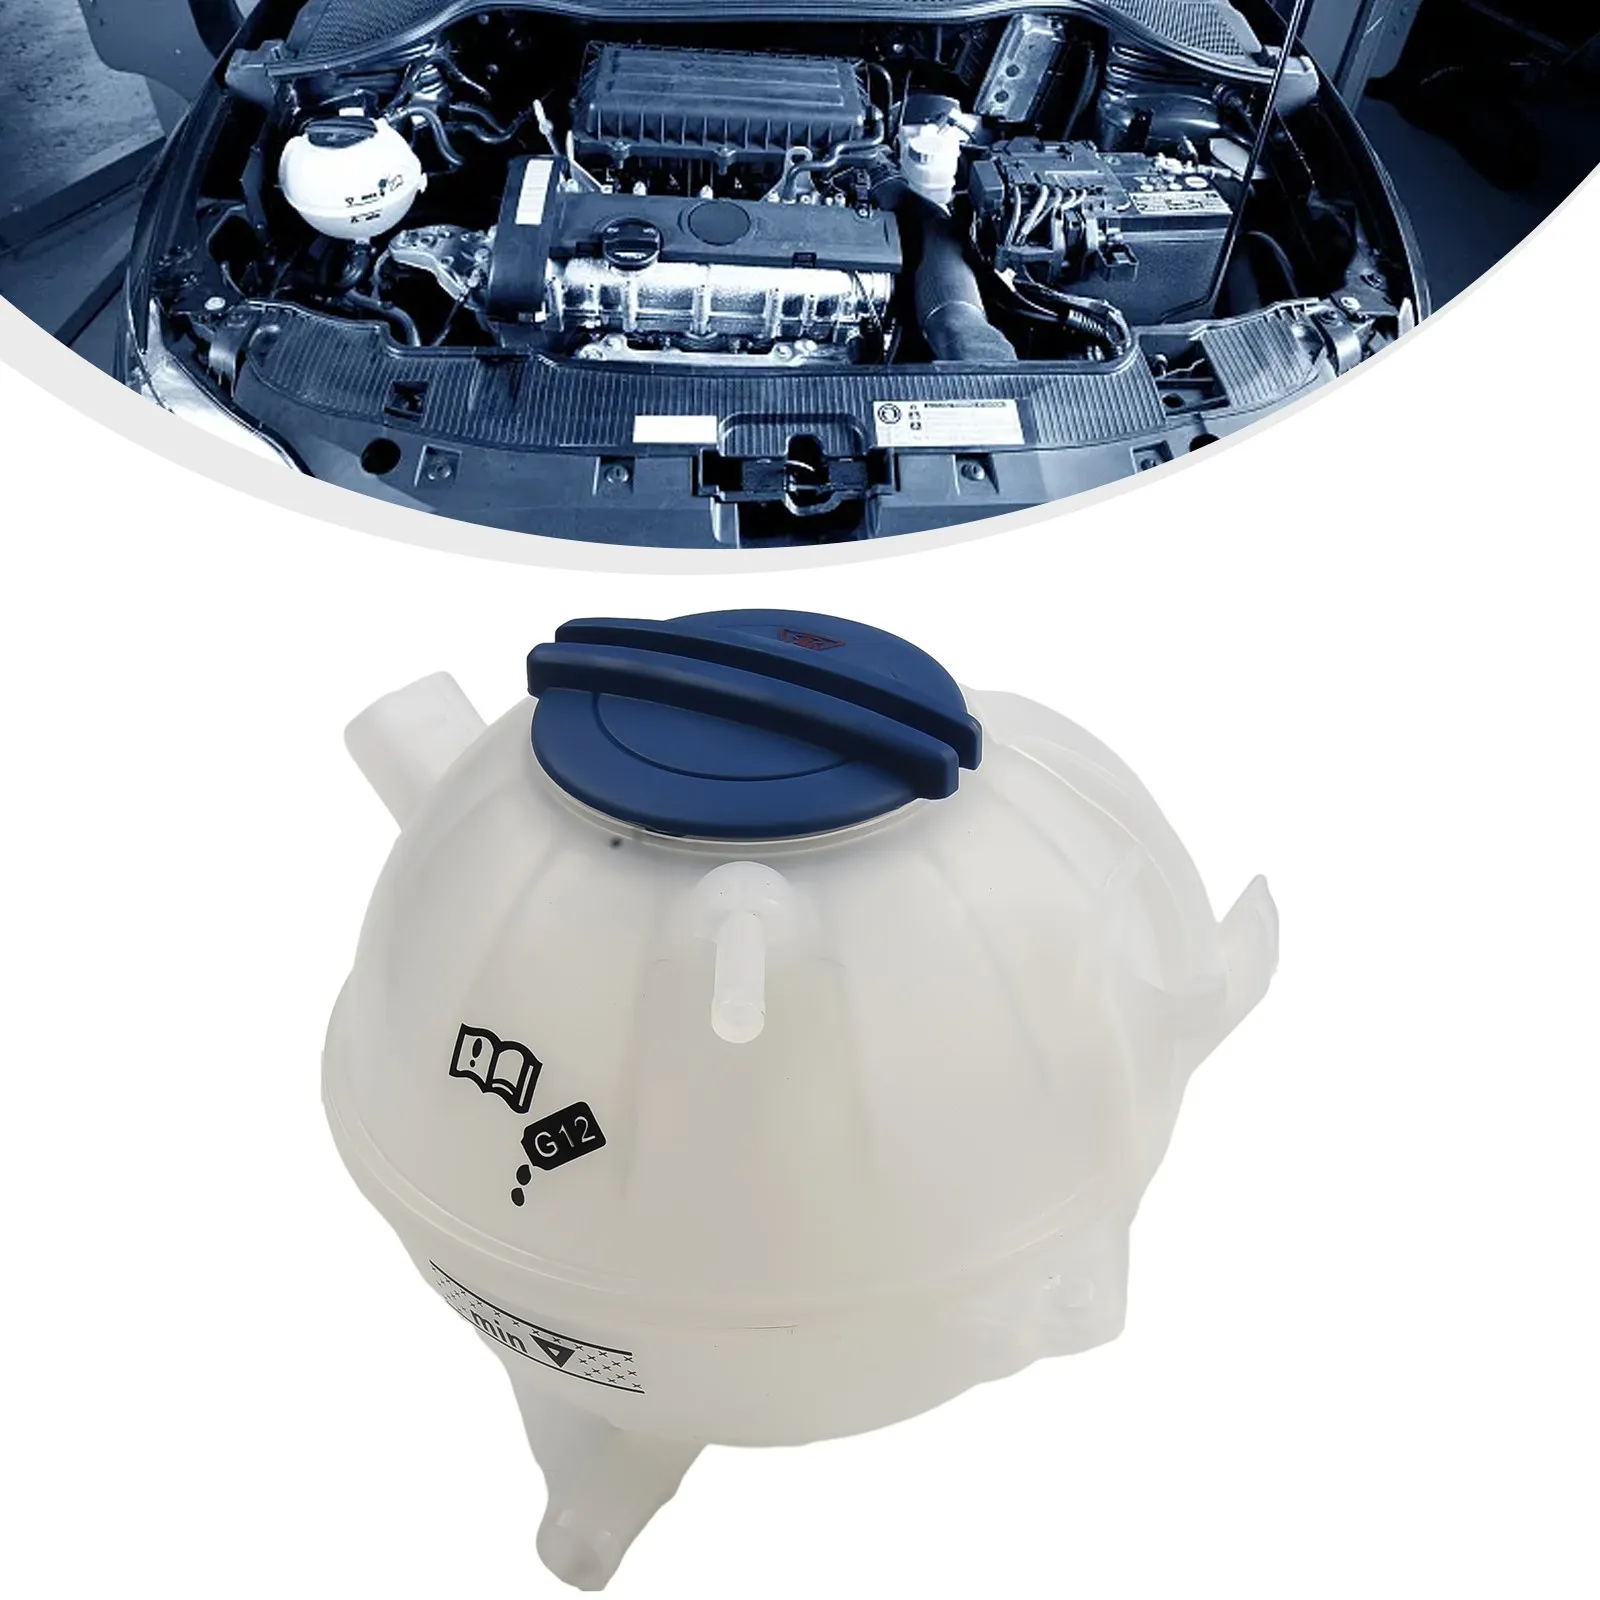 

Резервуар охлаждающей жидкости радиатора двигателя с крышкой для гольфа для MK6 1K012140 7A пластиковые автомобильные аксессуары